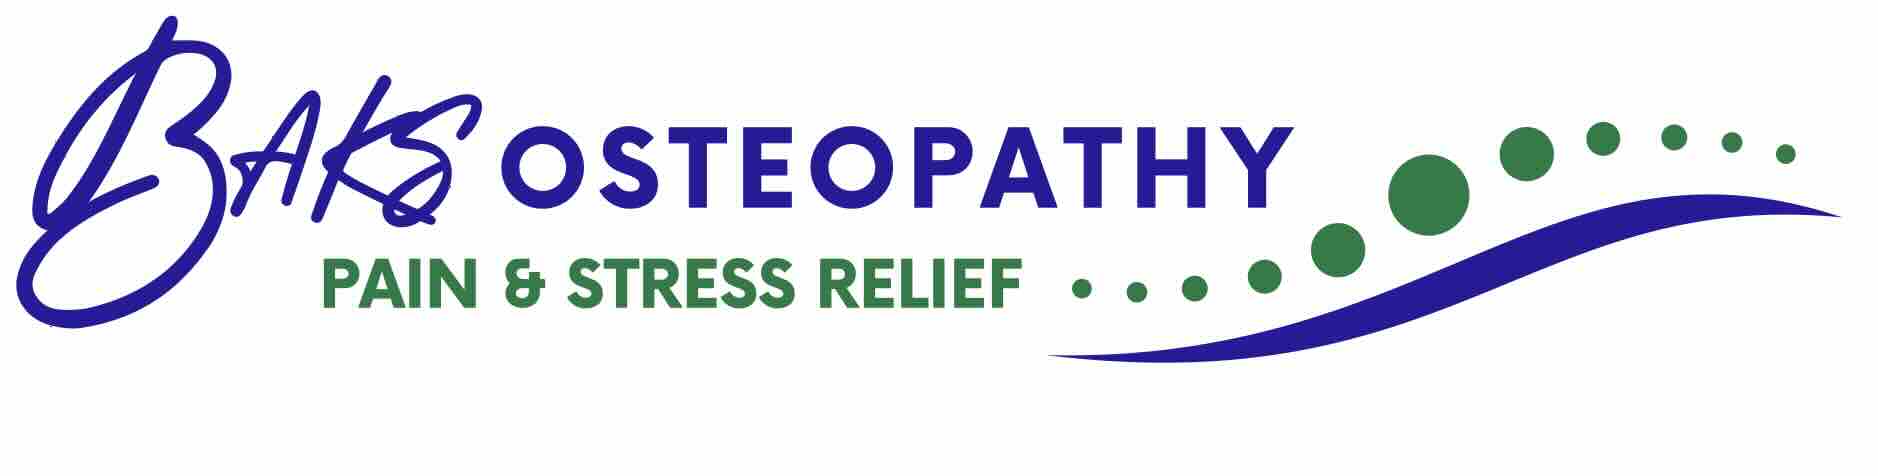 baks osteopathy logo in low resolution